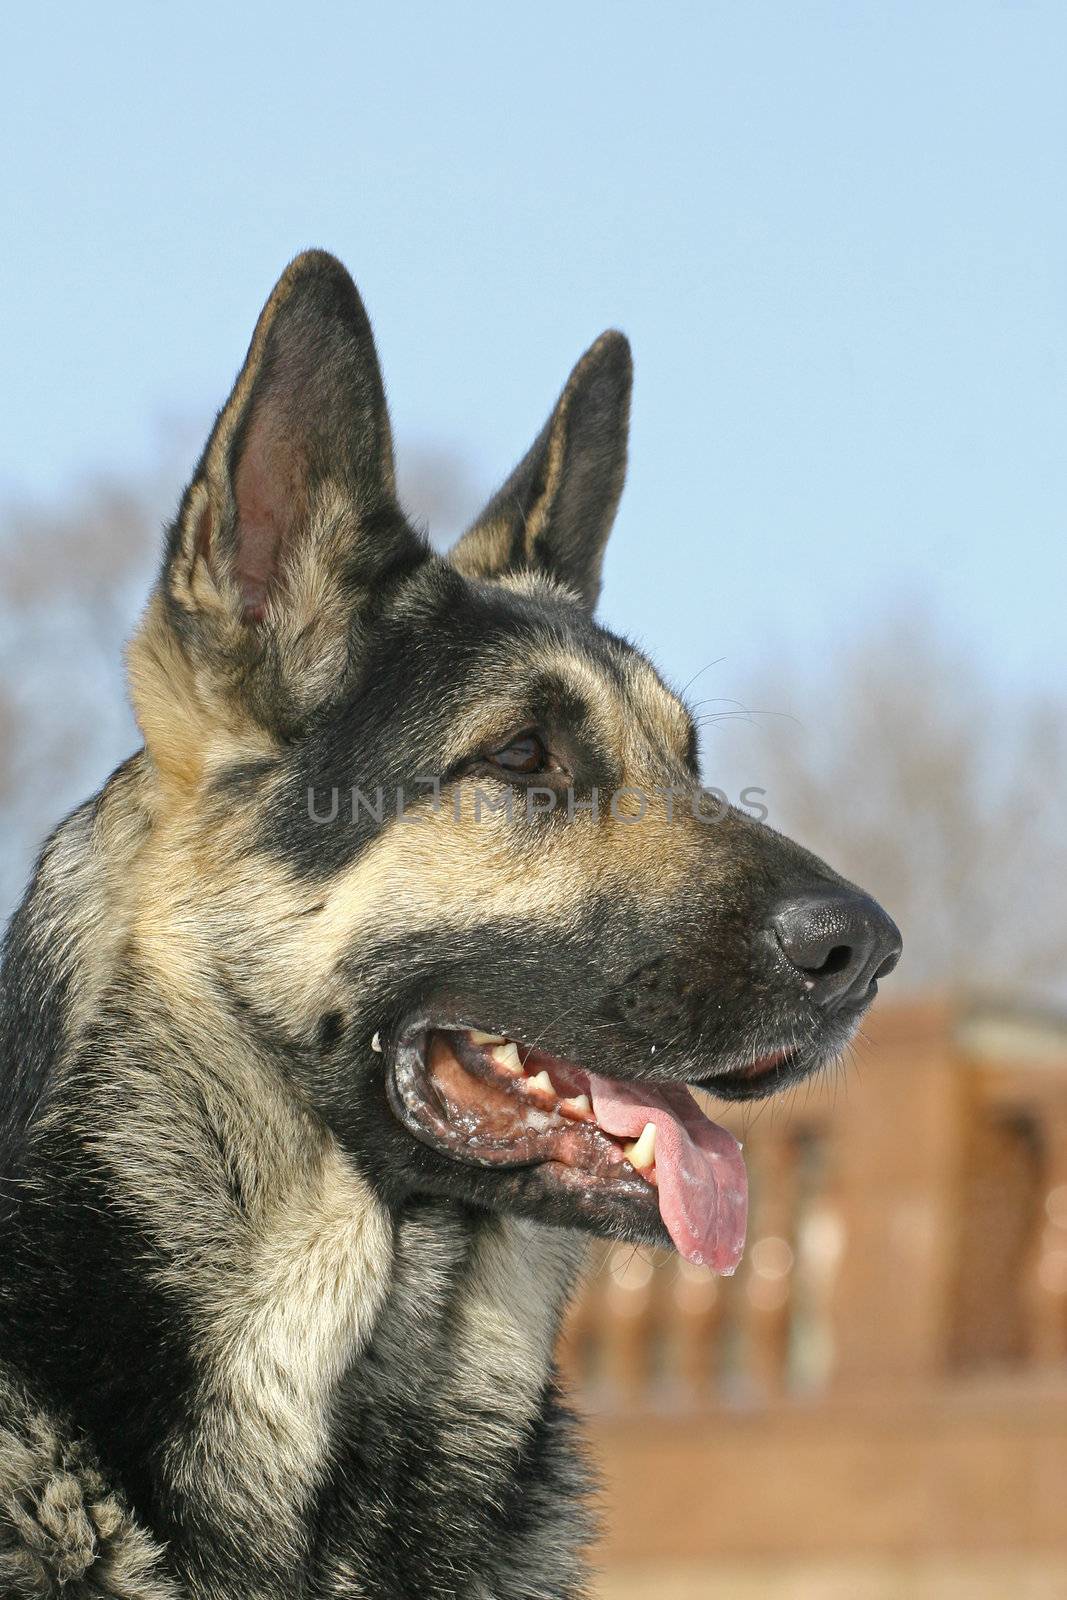 East shepherd dog by gsdonlin